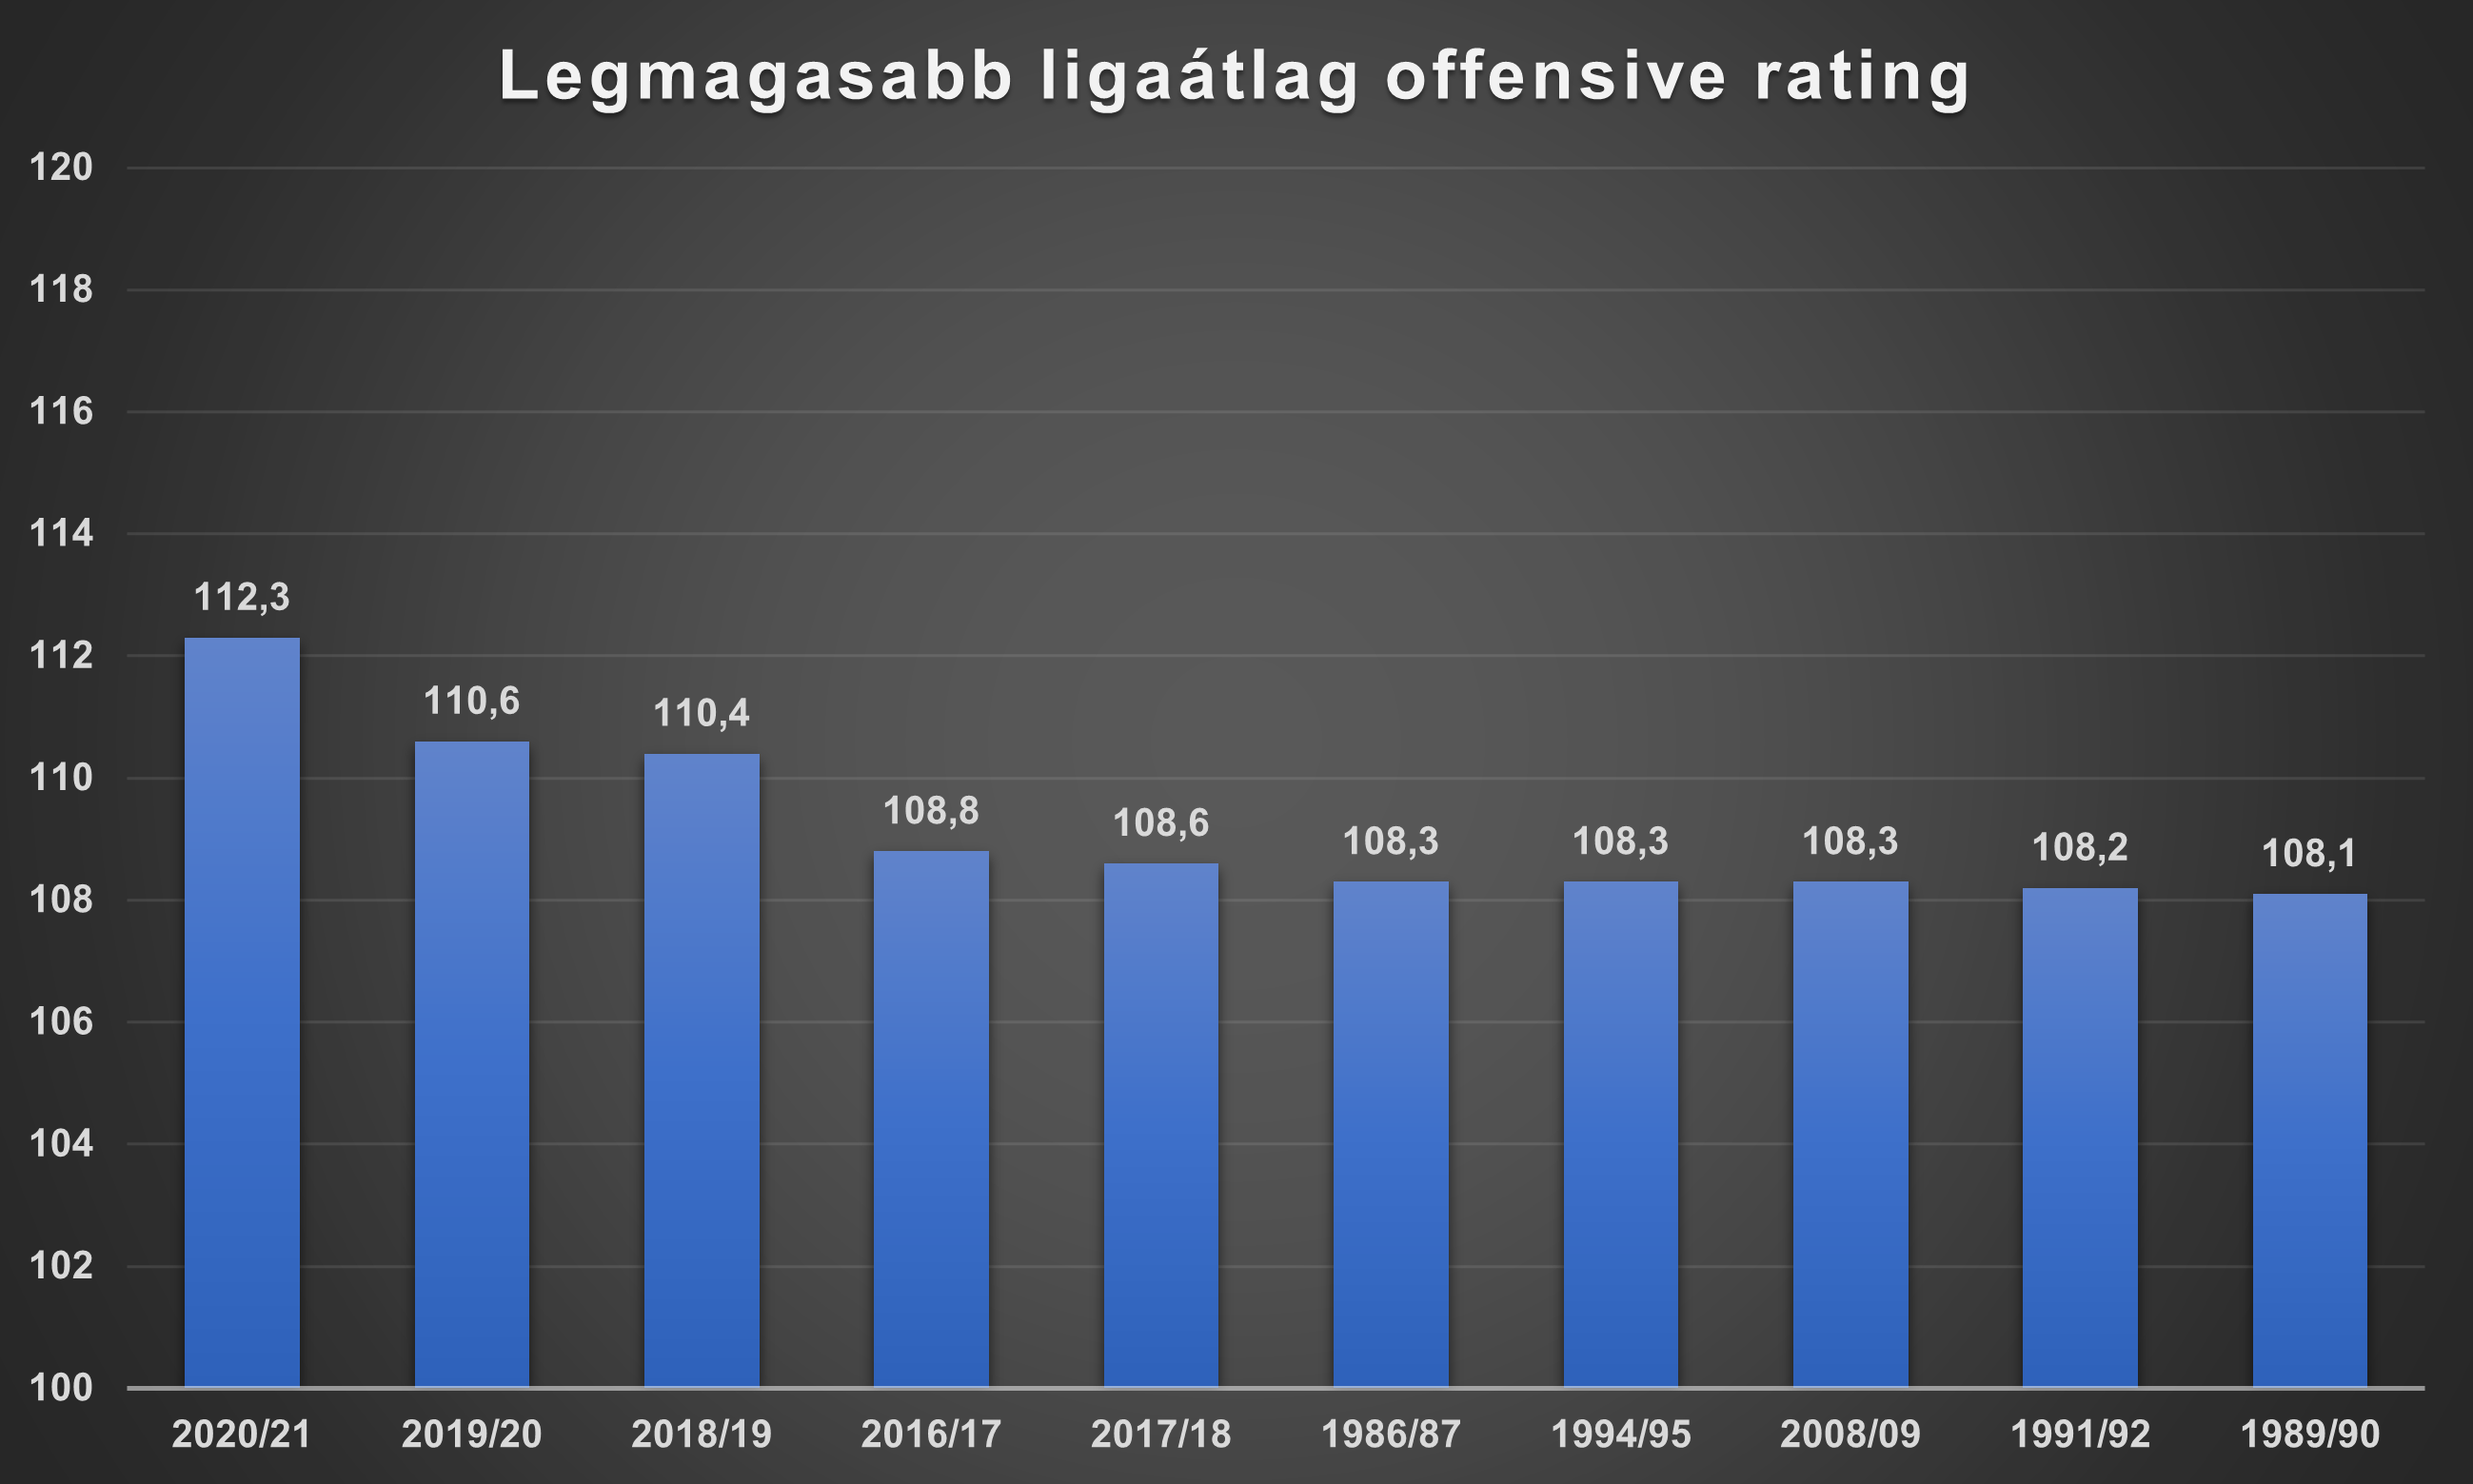 legmagasabb_ligaatlag_offensive_rating.png